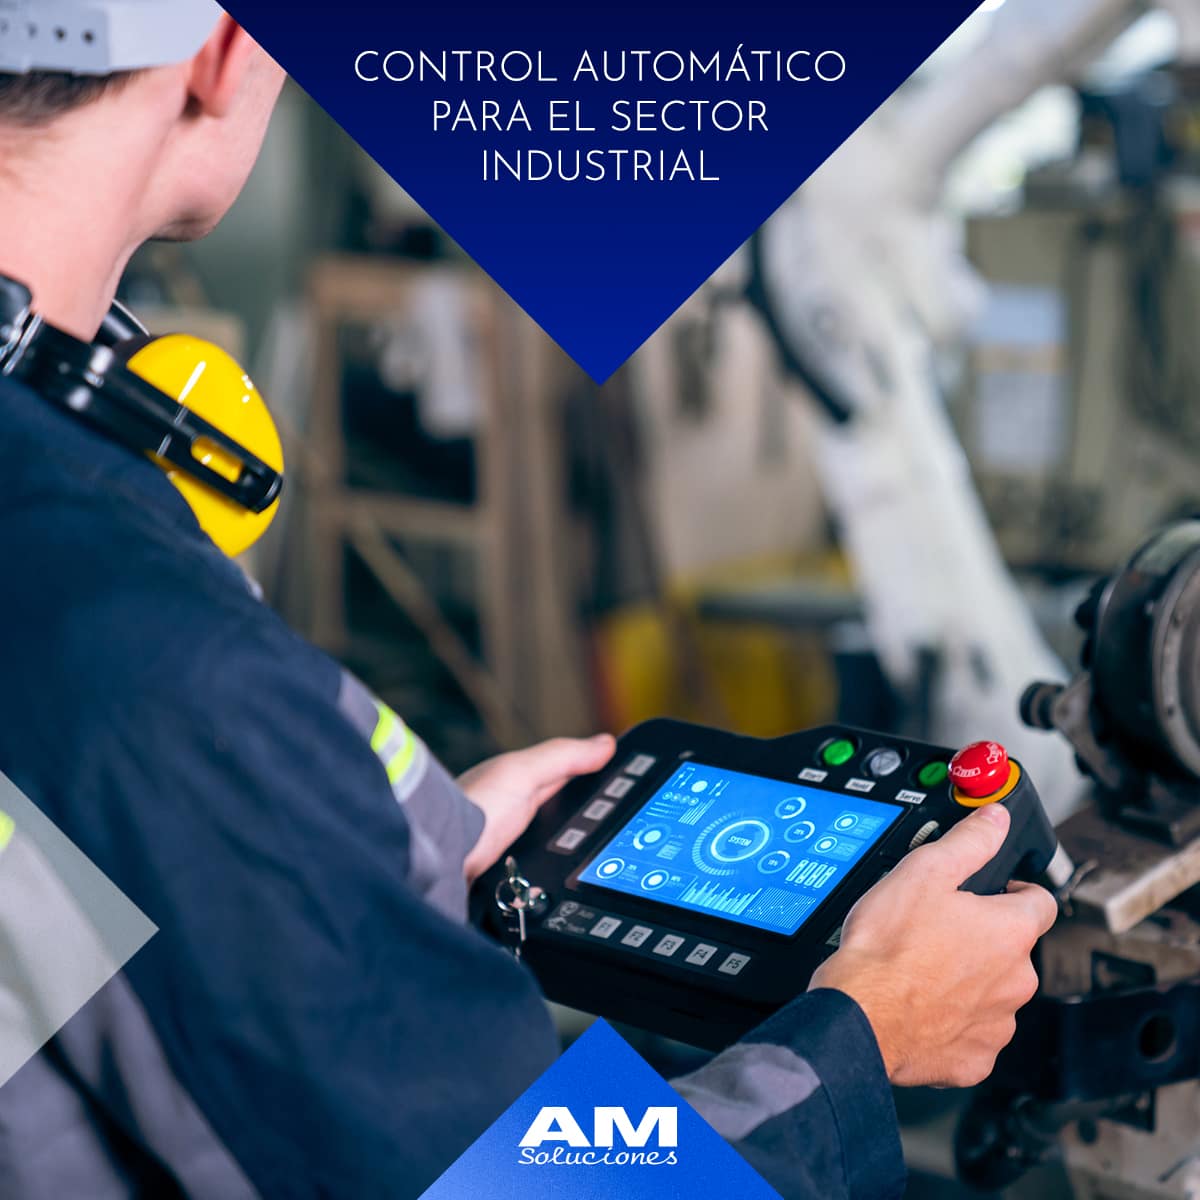 Control automático en el sector industrial